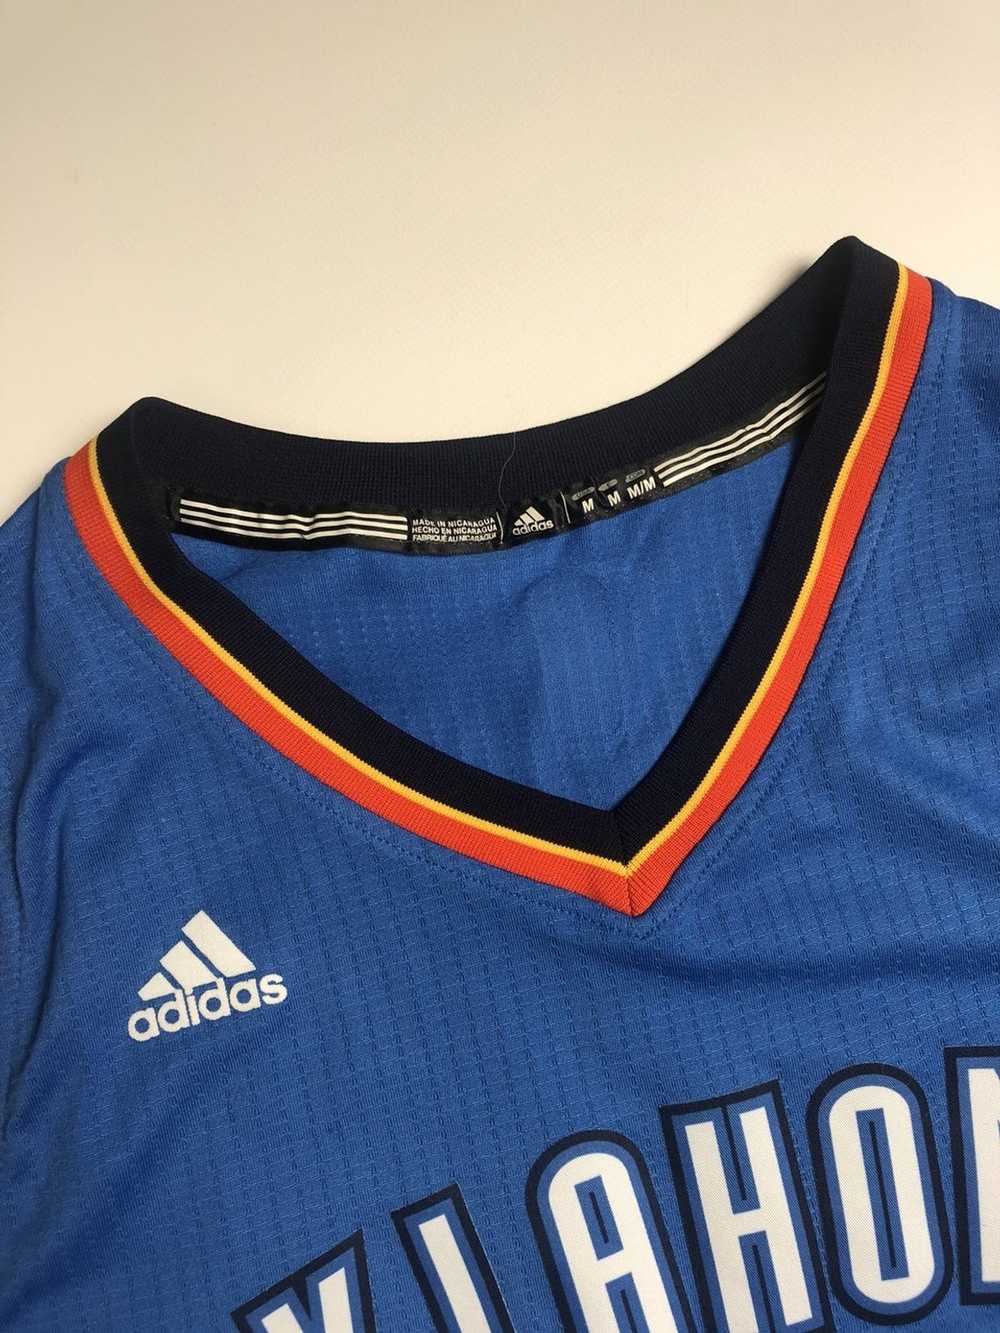 Adidas × Kevin Durant × NBA Adidas Basketball Jer… - image 3